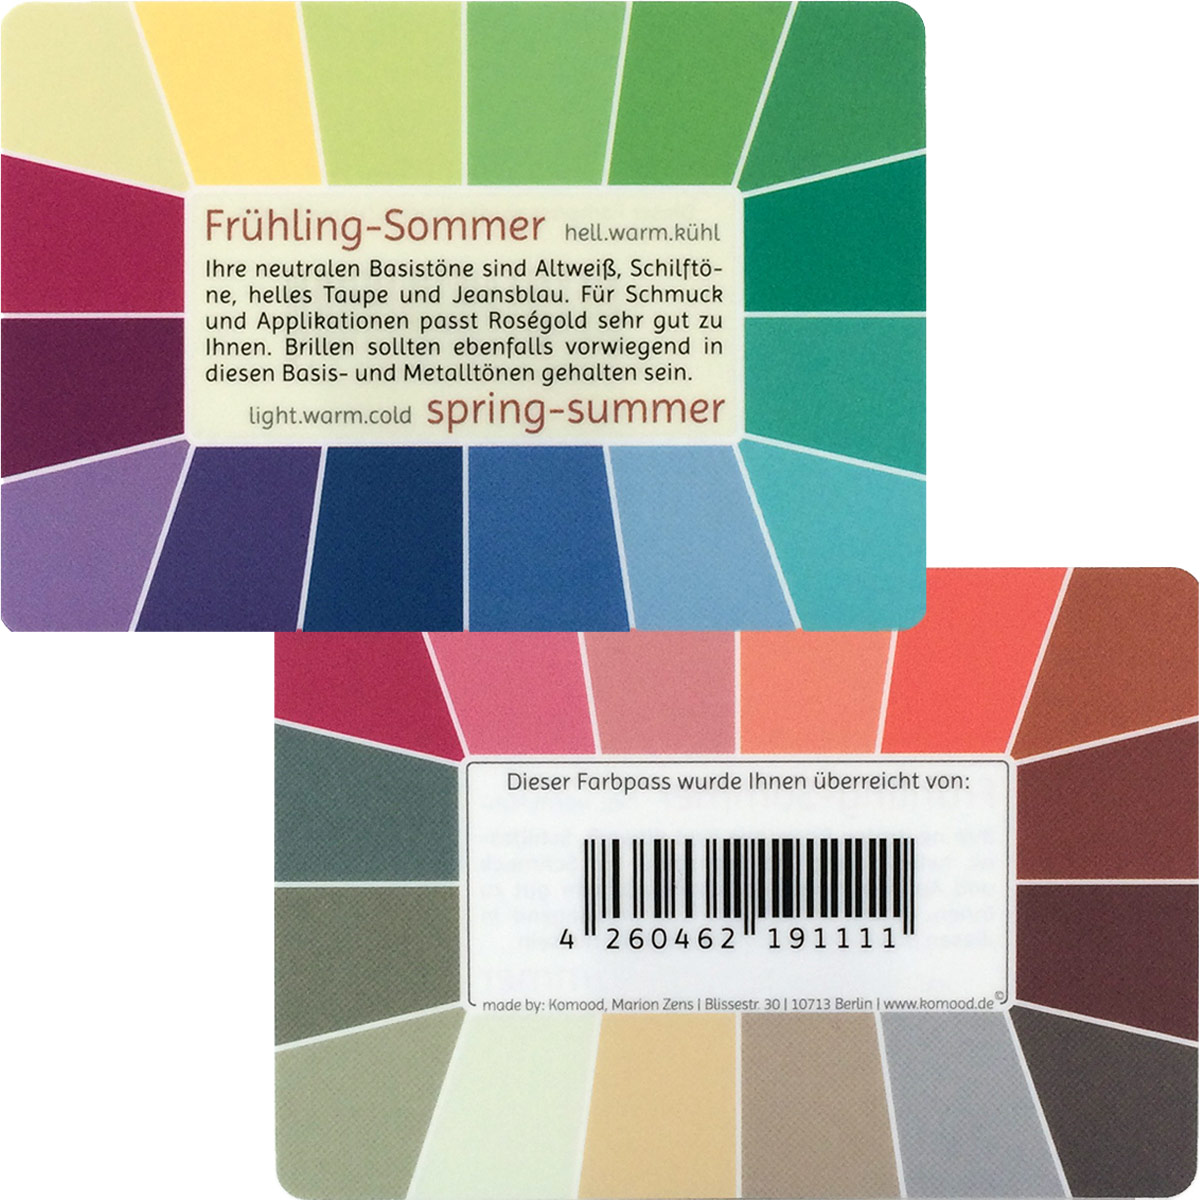 Farbpass Frühling-Sommer - Memo, 32 Farben